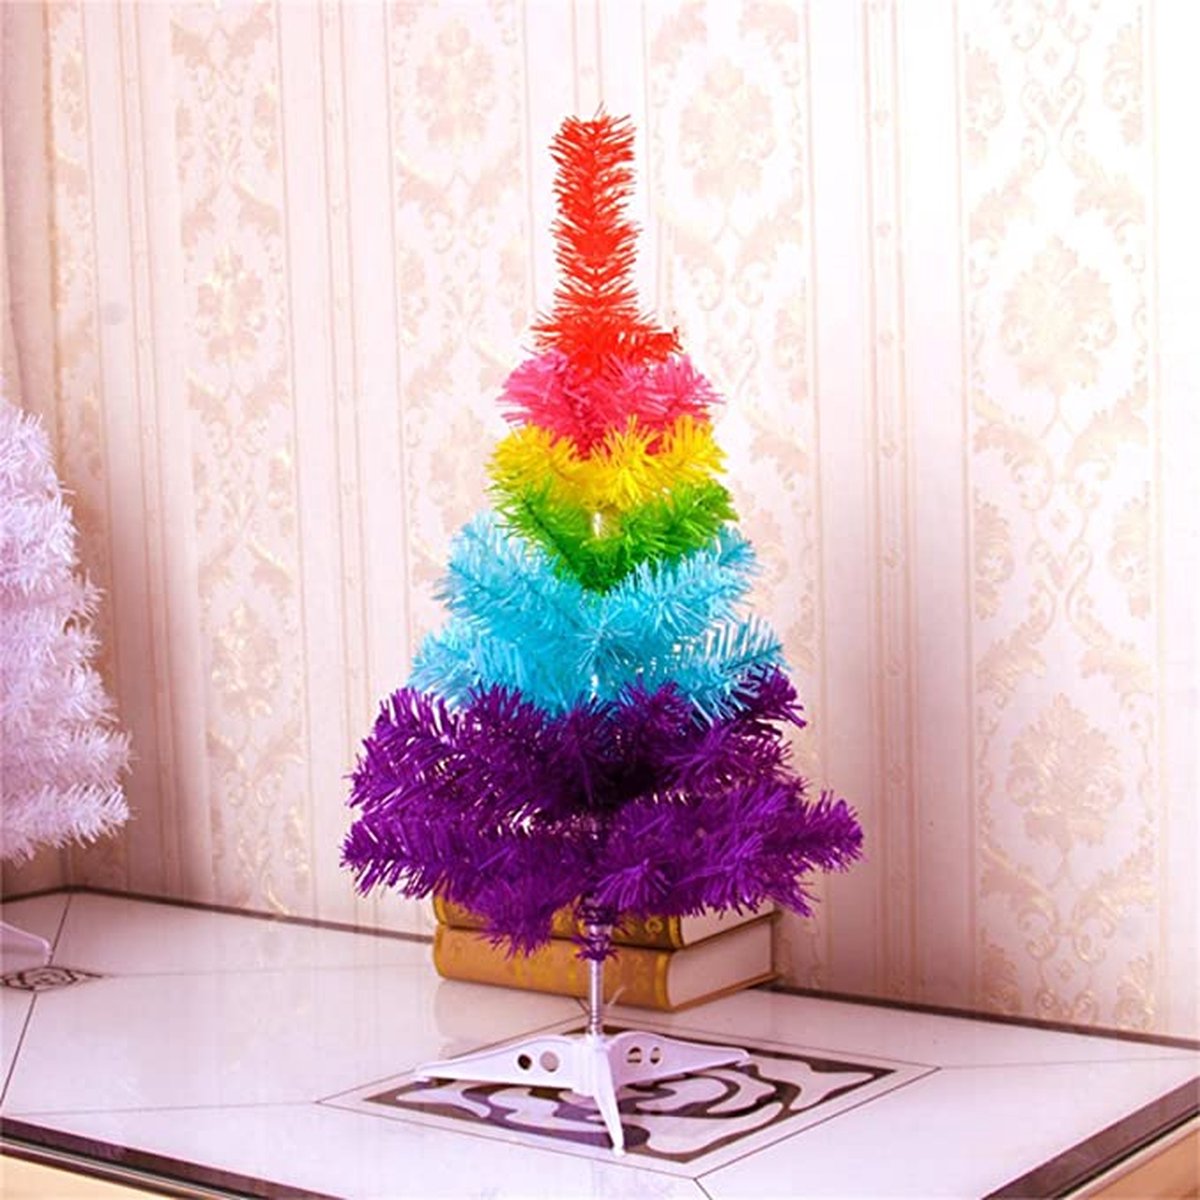 *** Regenboog Kerstboom Orgineel - Kerst Decoratie - Christmas Rainbow Tree - van Heble® ***